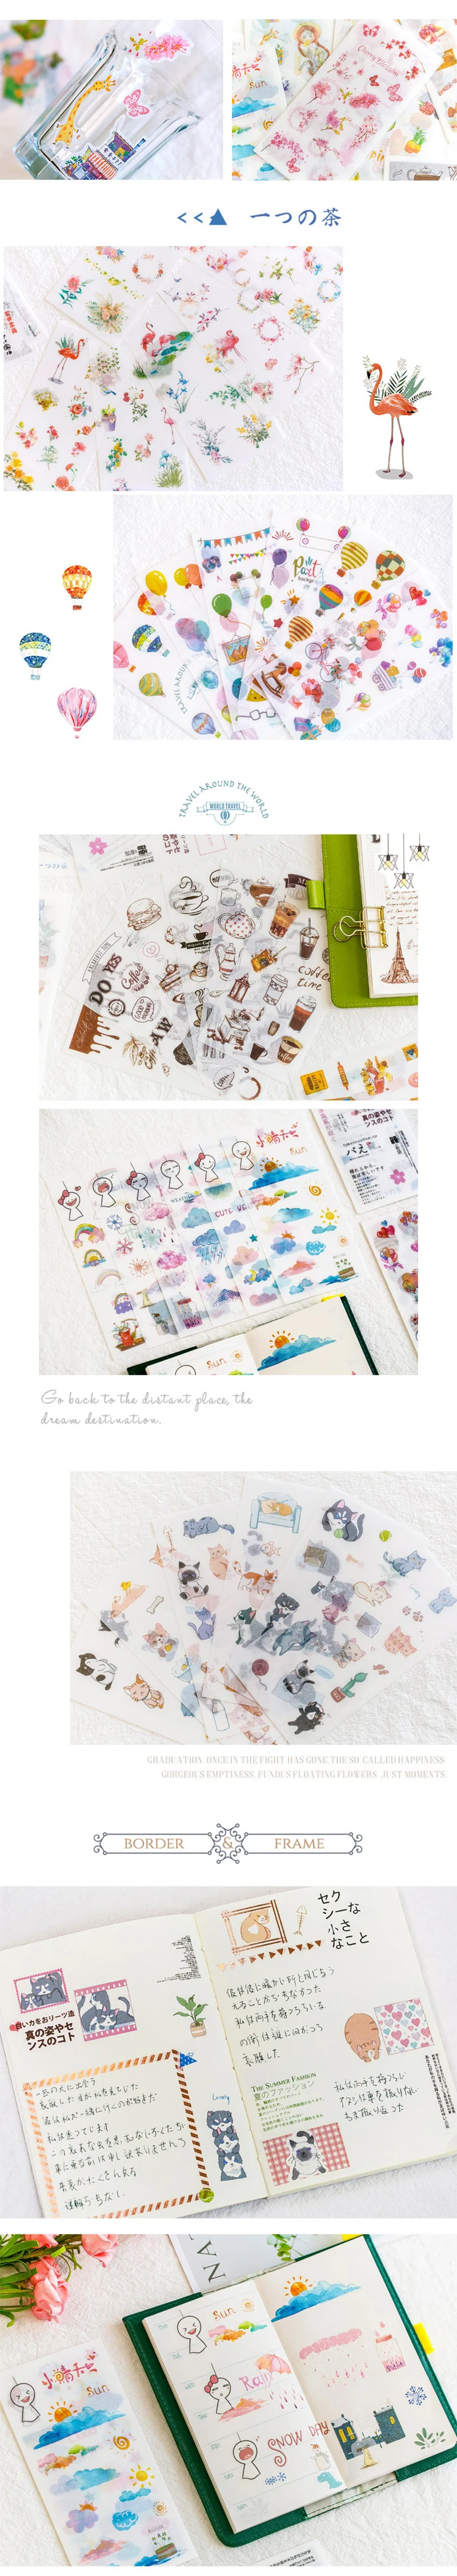 6 шт/лот Yuxian мультфильм акварельные детские бумажные наклейки декоративные наклейки DIY дневник в стиле Скрапбукинг планировщик этикетка наклейка